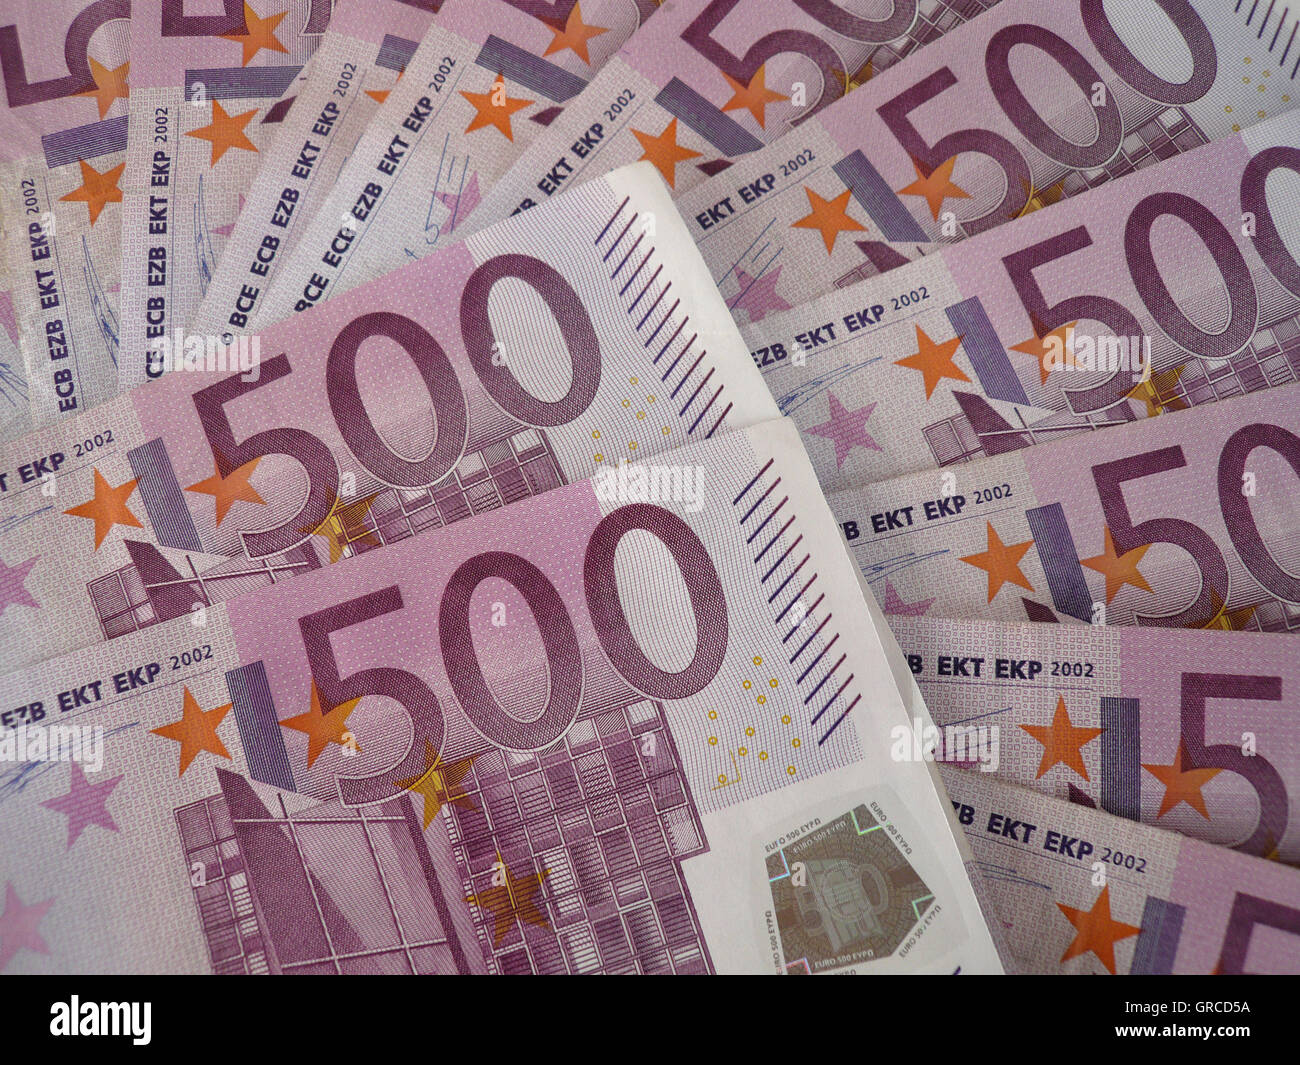 Beaucoup d'argent, beaucoup de 500 billets en euros Banque D'Images